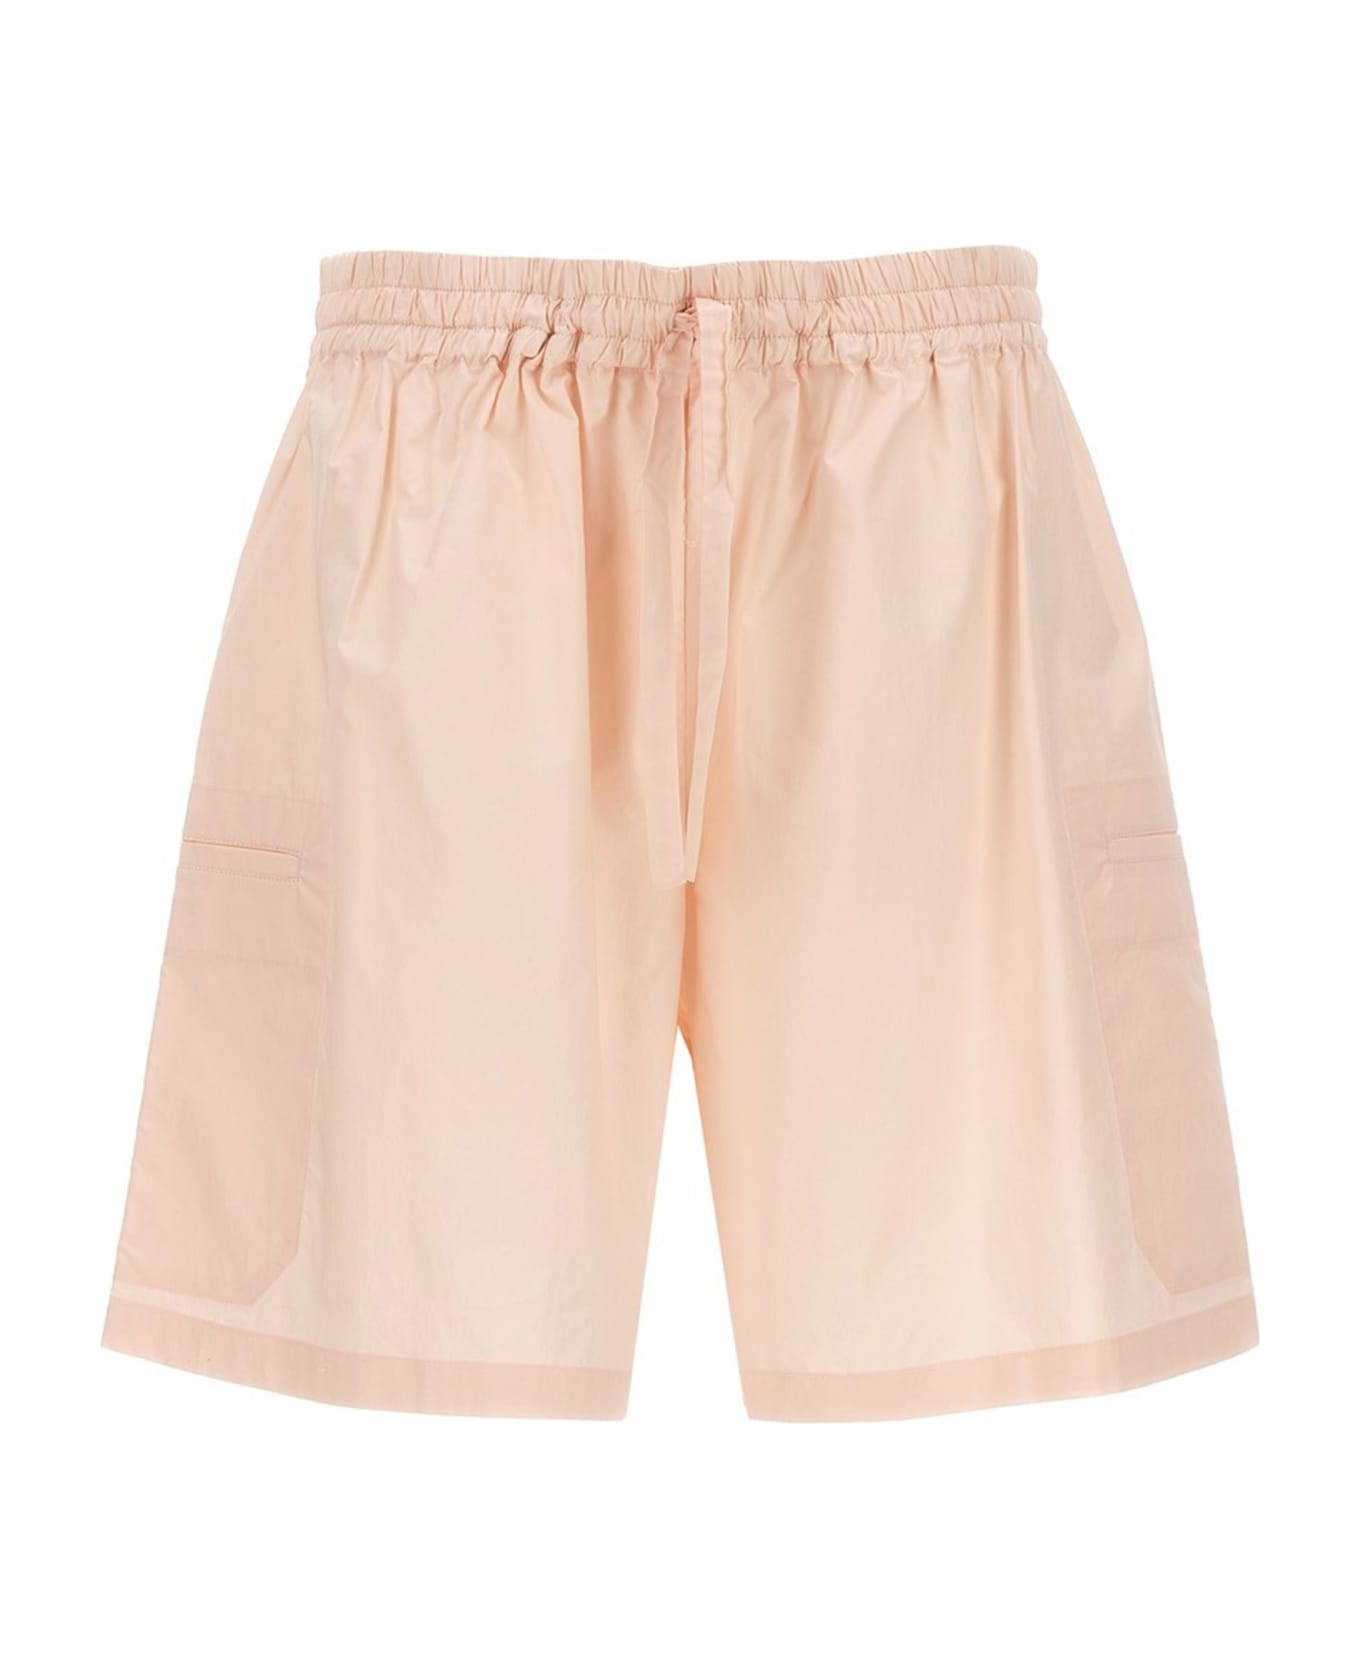 Studio Nicholson 'rio' Bermuda Shorts - Pink